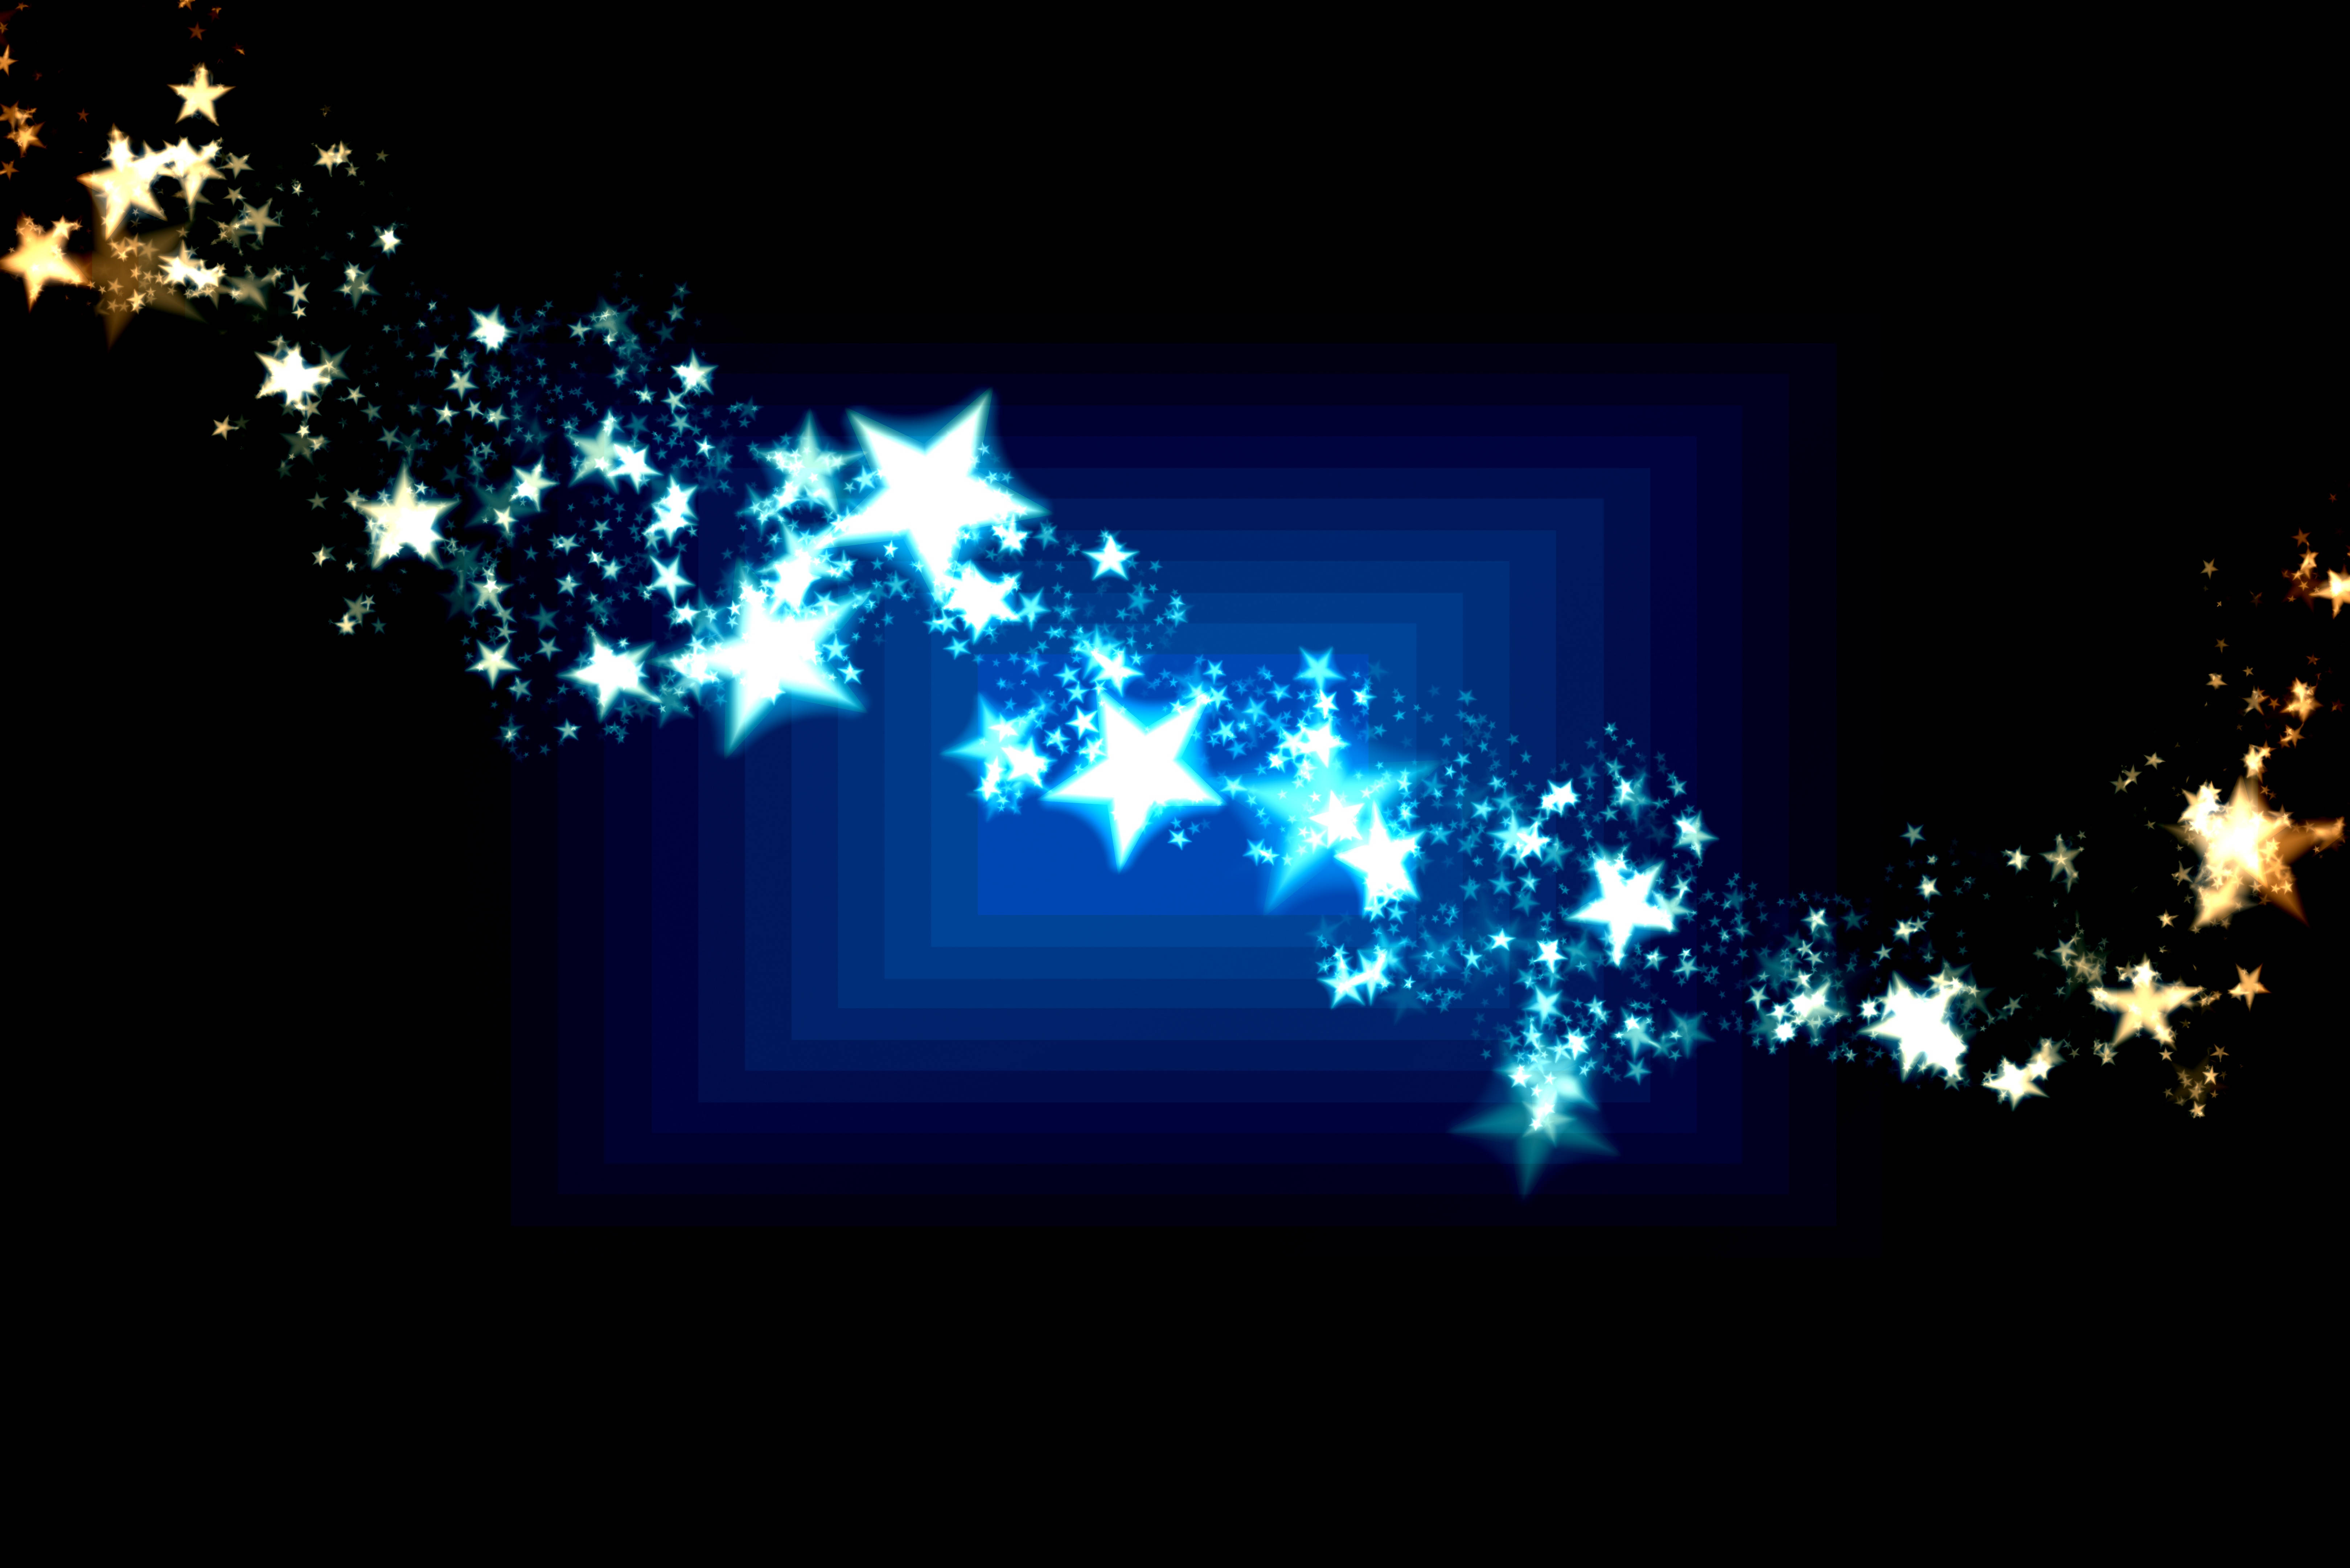 sparkle star background